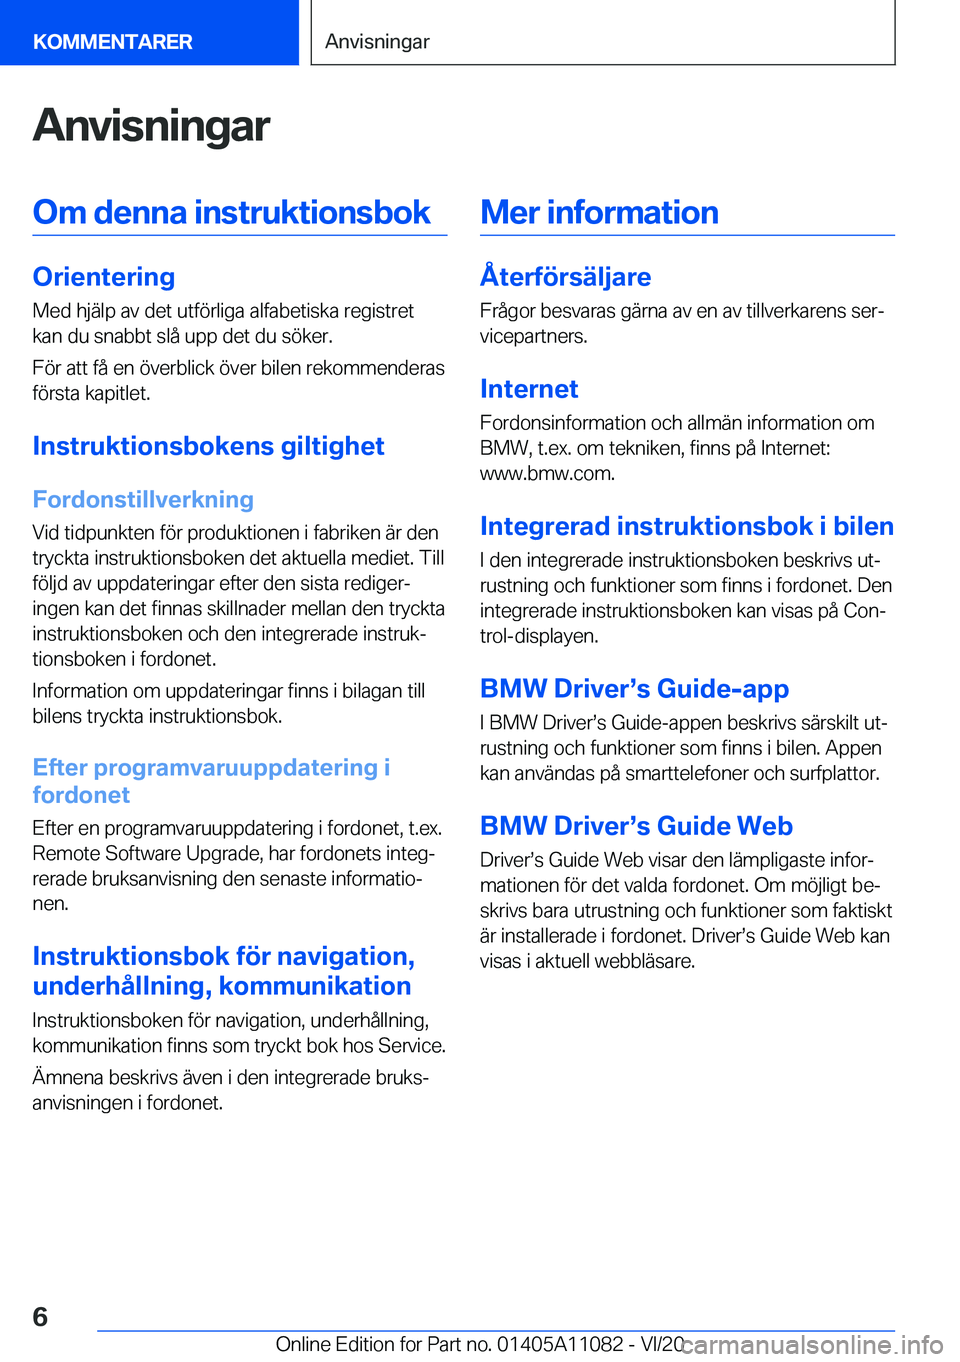 BMW 7 SERIES 2021  InstruktionsbÖcker (in Swedish) �A�n�v�i�s�n�i�n�g�a�r�O�m��d�e�n�n�a��i�n�s�t�r�u�k�t�i�o�n�s�b�o�k
�O�r�i�e�n�t�e�r�i�n�g
�M�e�d��h�j�ä�l�p��a�v��d�e�t��u�t�f�